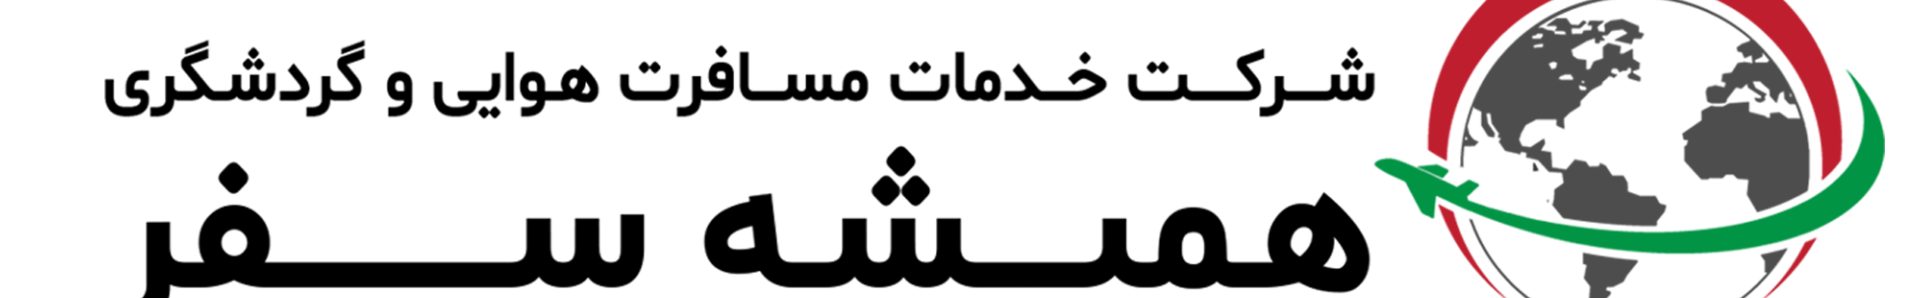 Shiraz. Hamishehsafar's profile banner